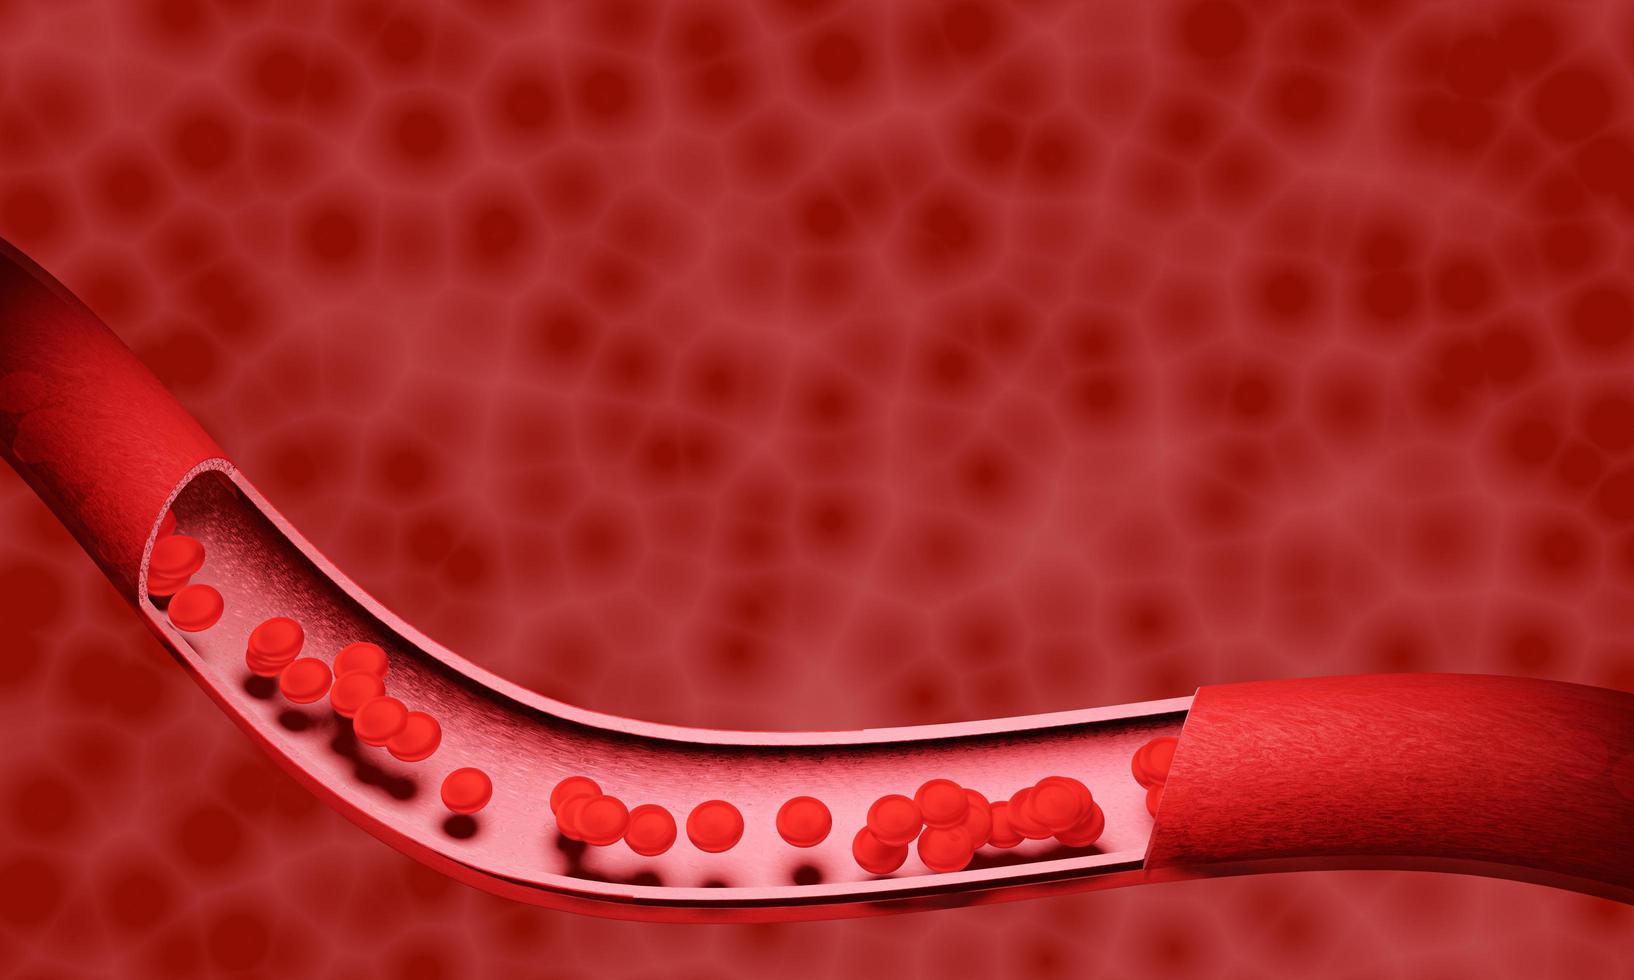 glóbulos vermelhos em uma artéria ou vaso sanguíneo, fluem dentro do corpo, cuidados médicos de saúde humana. renderização 3D. foto